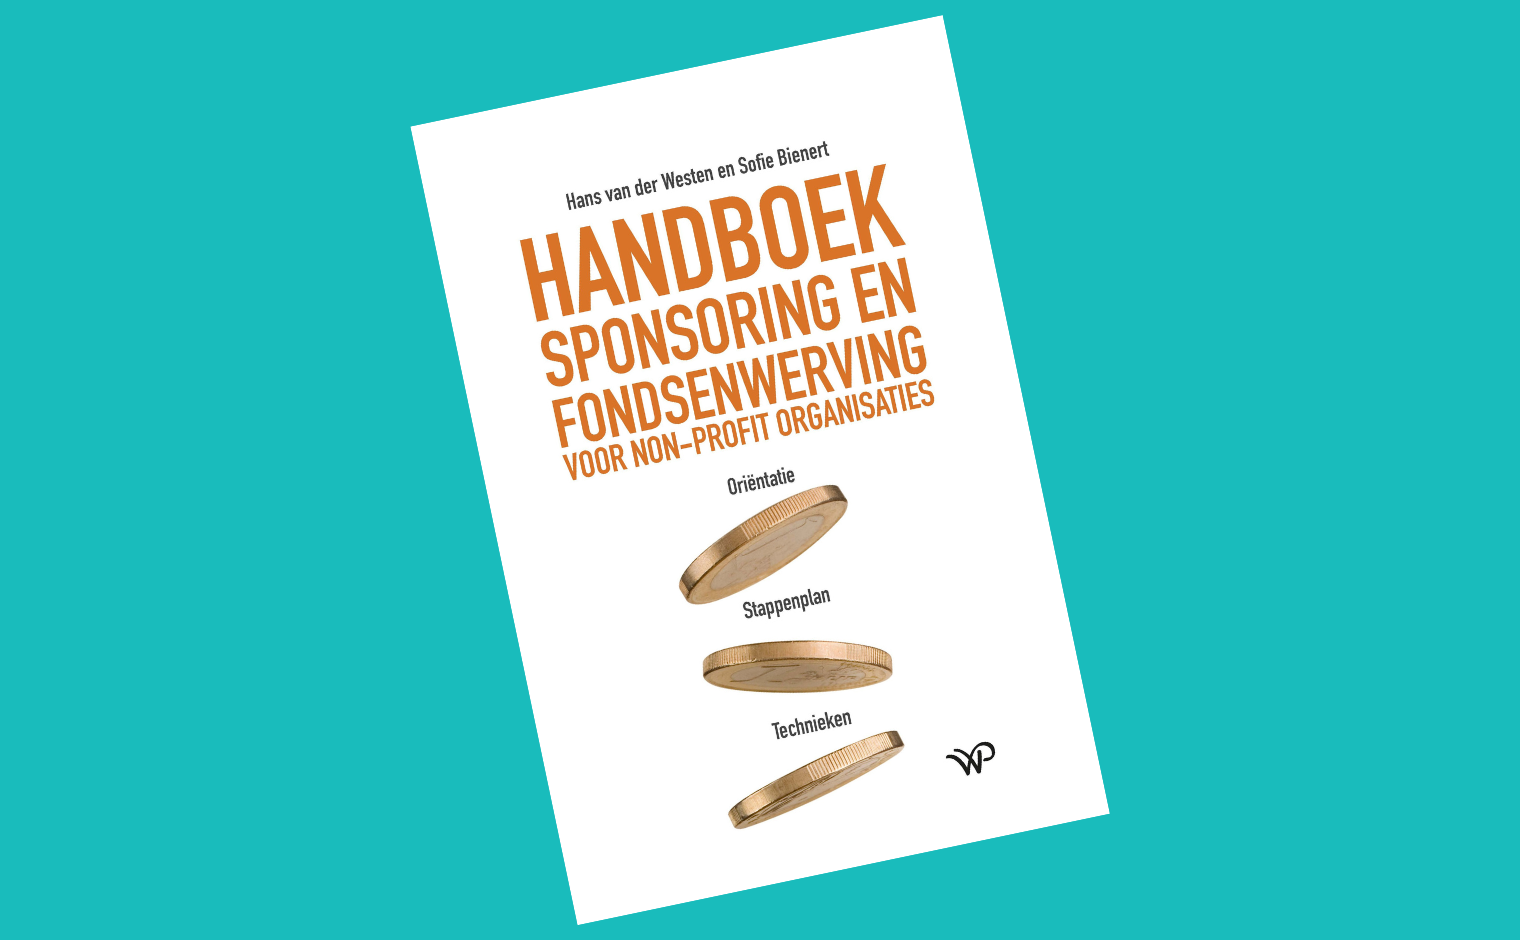 Cover van het Handboek Sponsoring en Fondsenwerving van Sofie Bienert en Hans van der Westen.